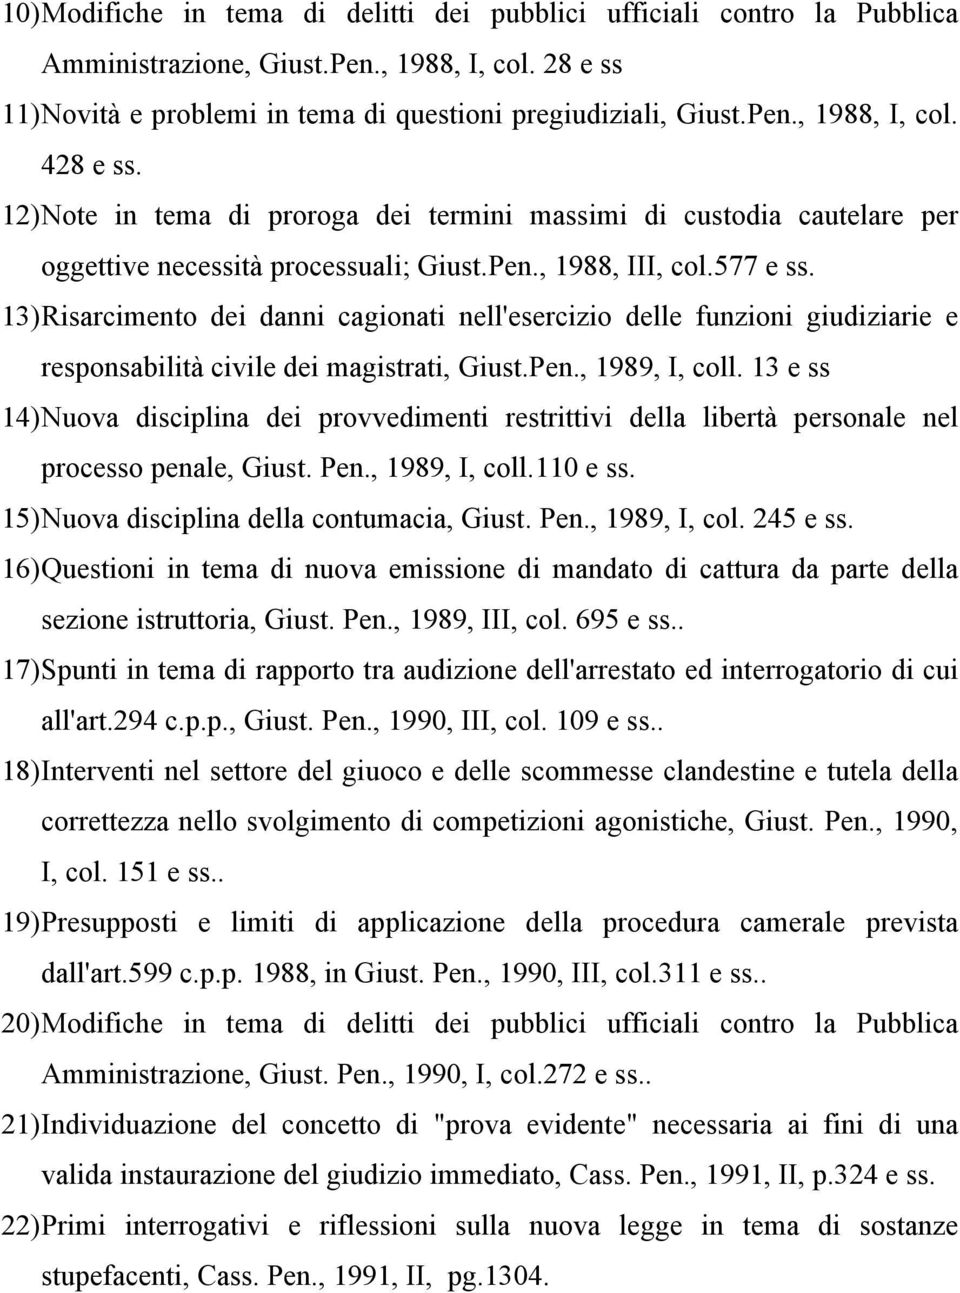 13) Risarcimento dei danni cagionati nell'esercizio delle funzioni giudiziarie e responsabilità civile dei magistrati, Giust.Pen., 1989, I, coll.